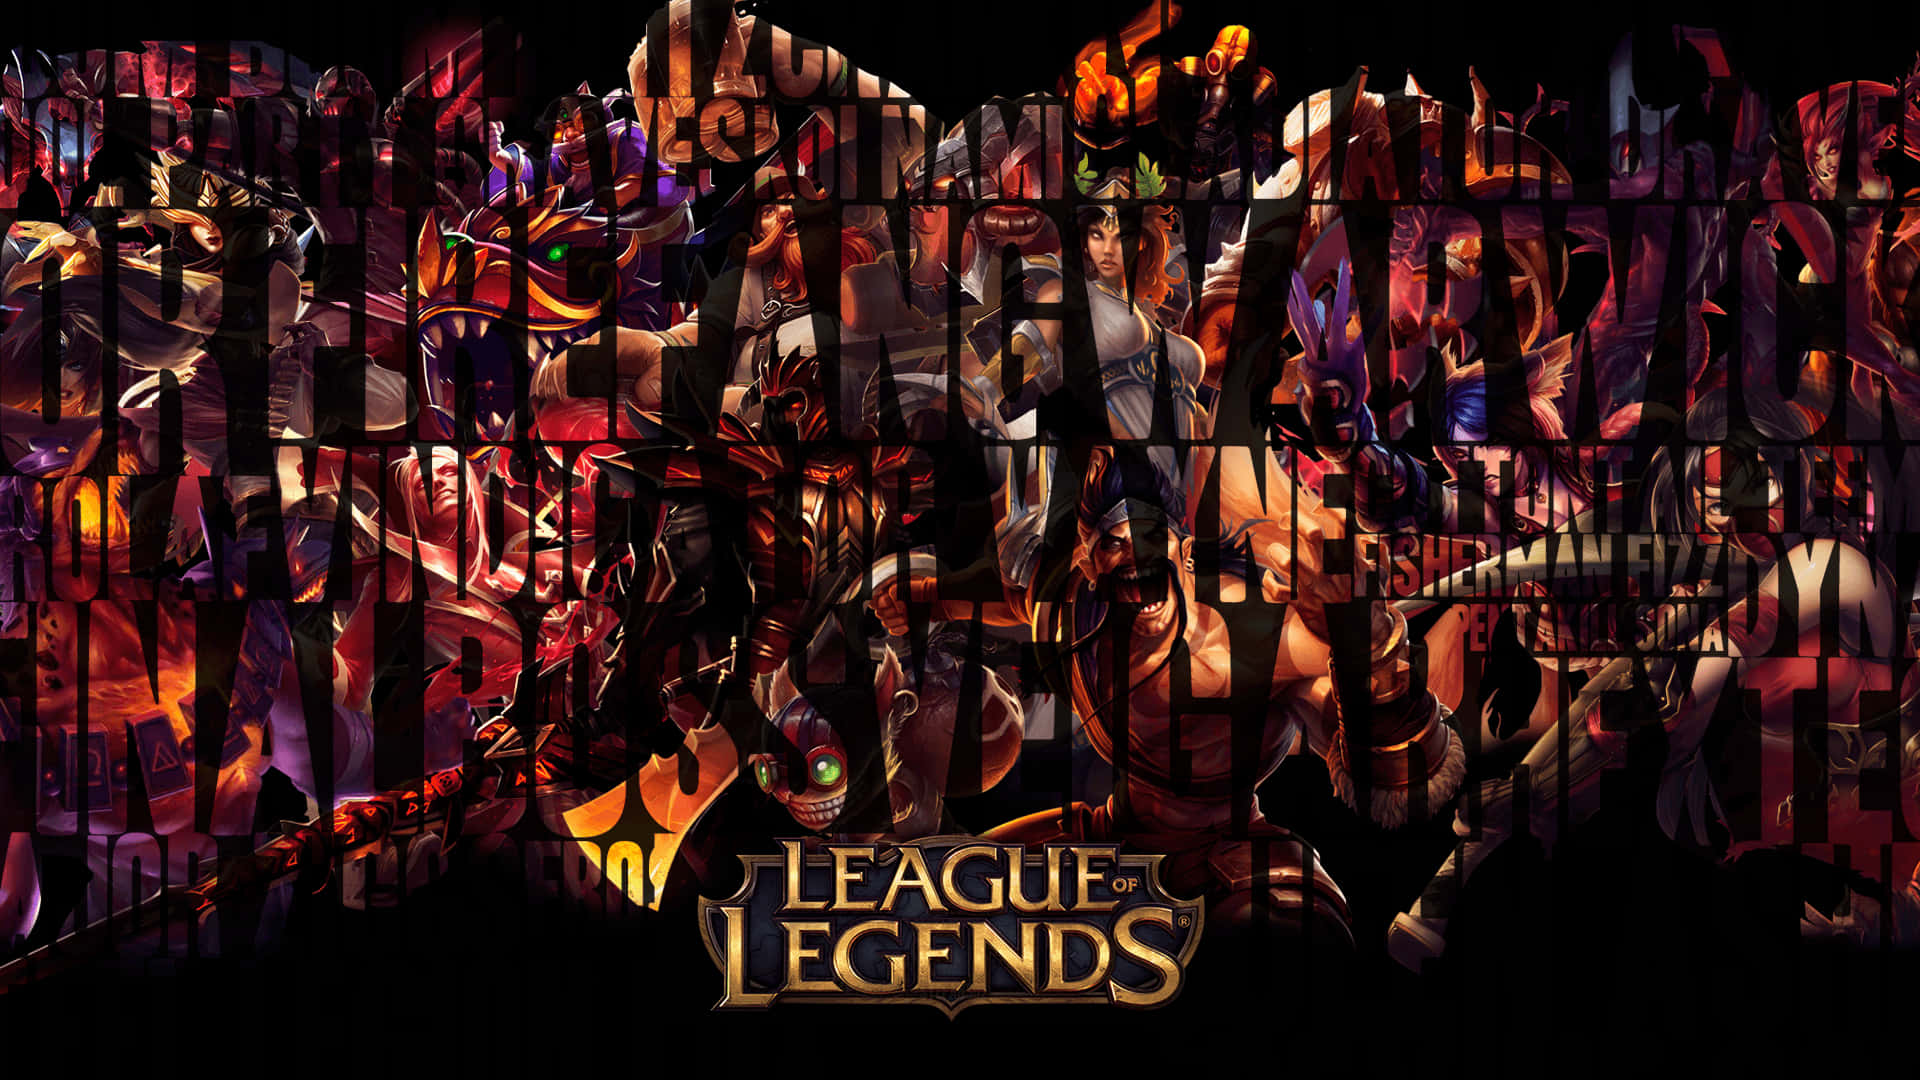 Unjugador Compite En La Serie Del Campeonato, La Competición De Primer Nivel En El Mundo De League Of Legends.